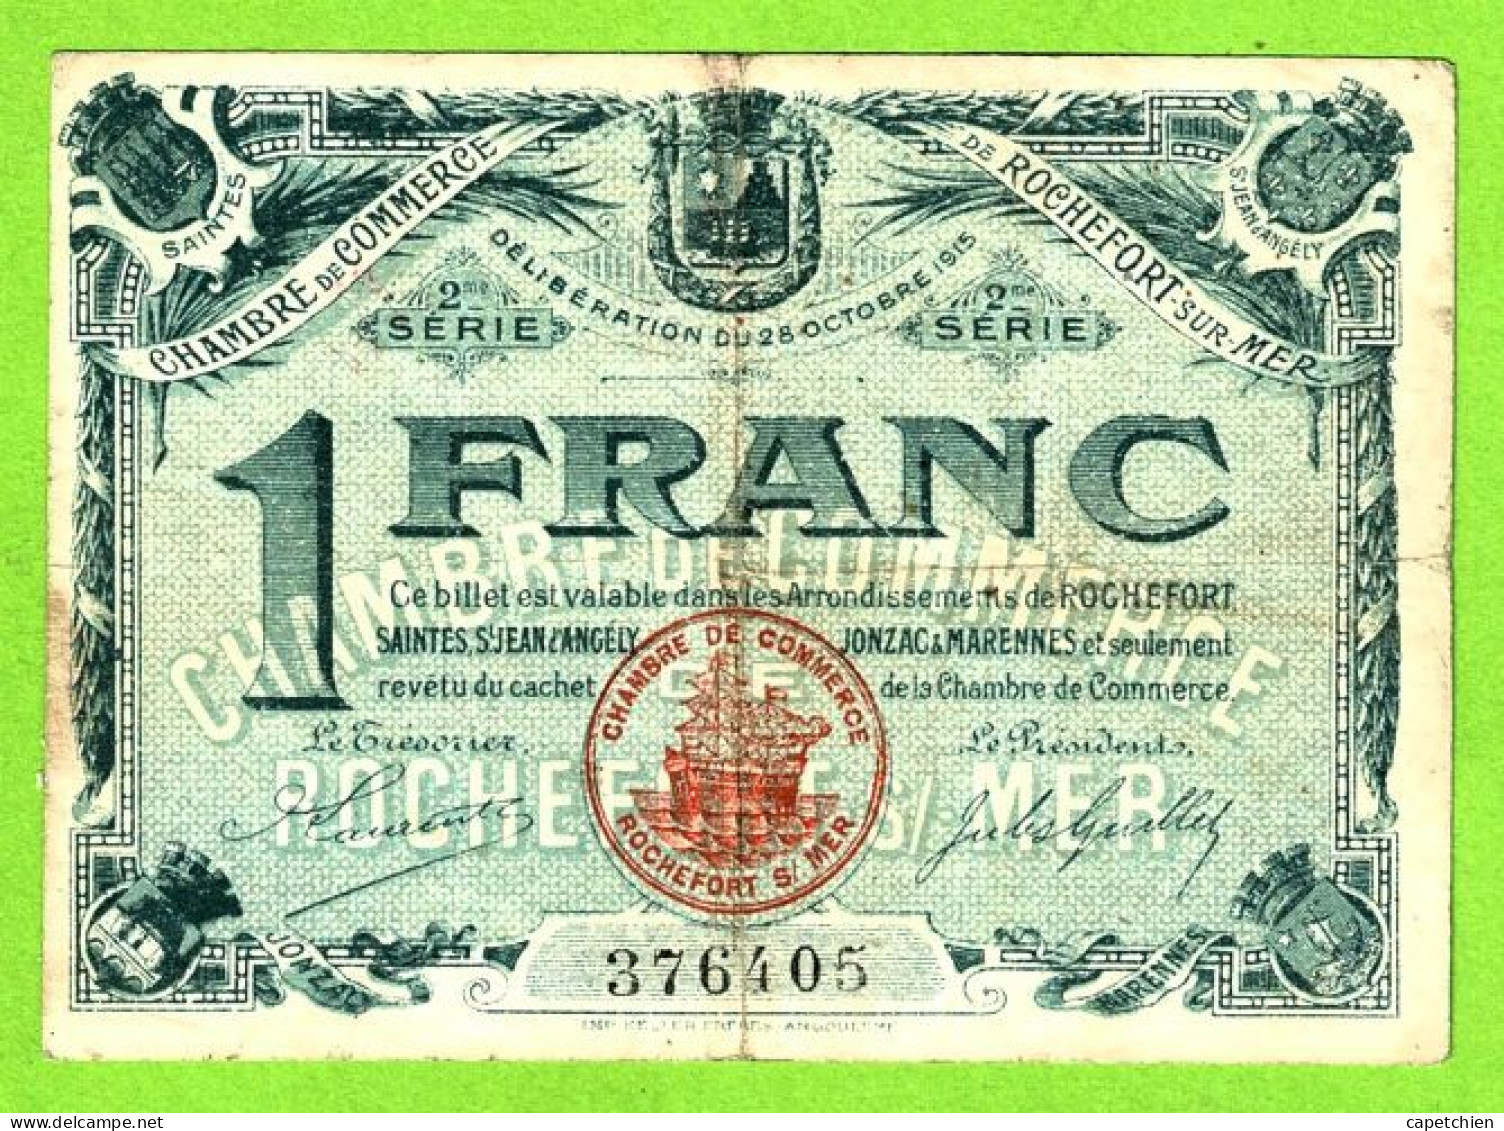 FRANCE/ CHAMBRE De COMMERCE De ROCHEFORT Sur MER/ 1 FRANC / 28 OCTOBRE 1915 / 299877 / 2 Eme SERIE - Camera Di Commercio